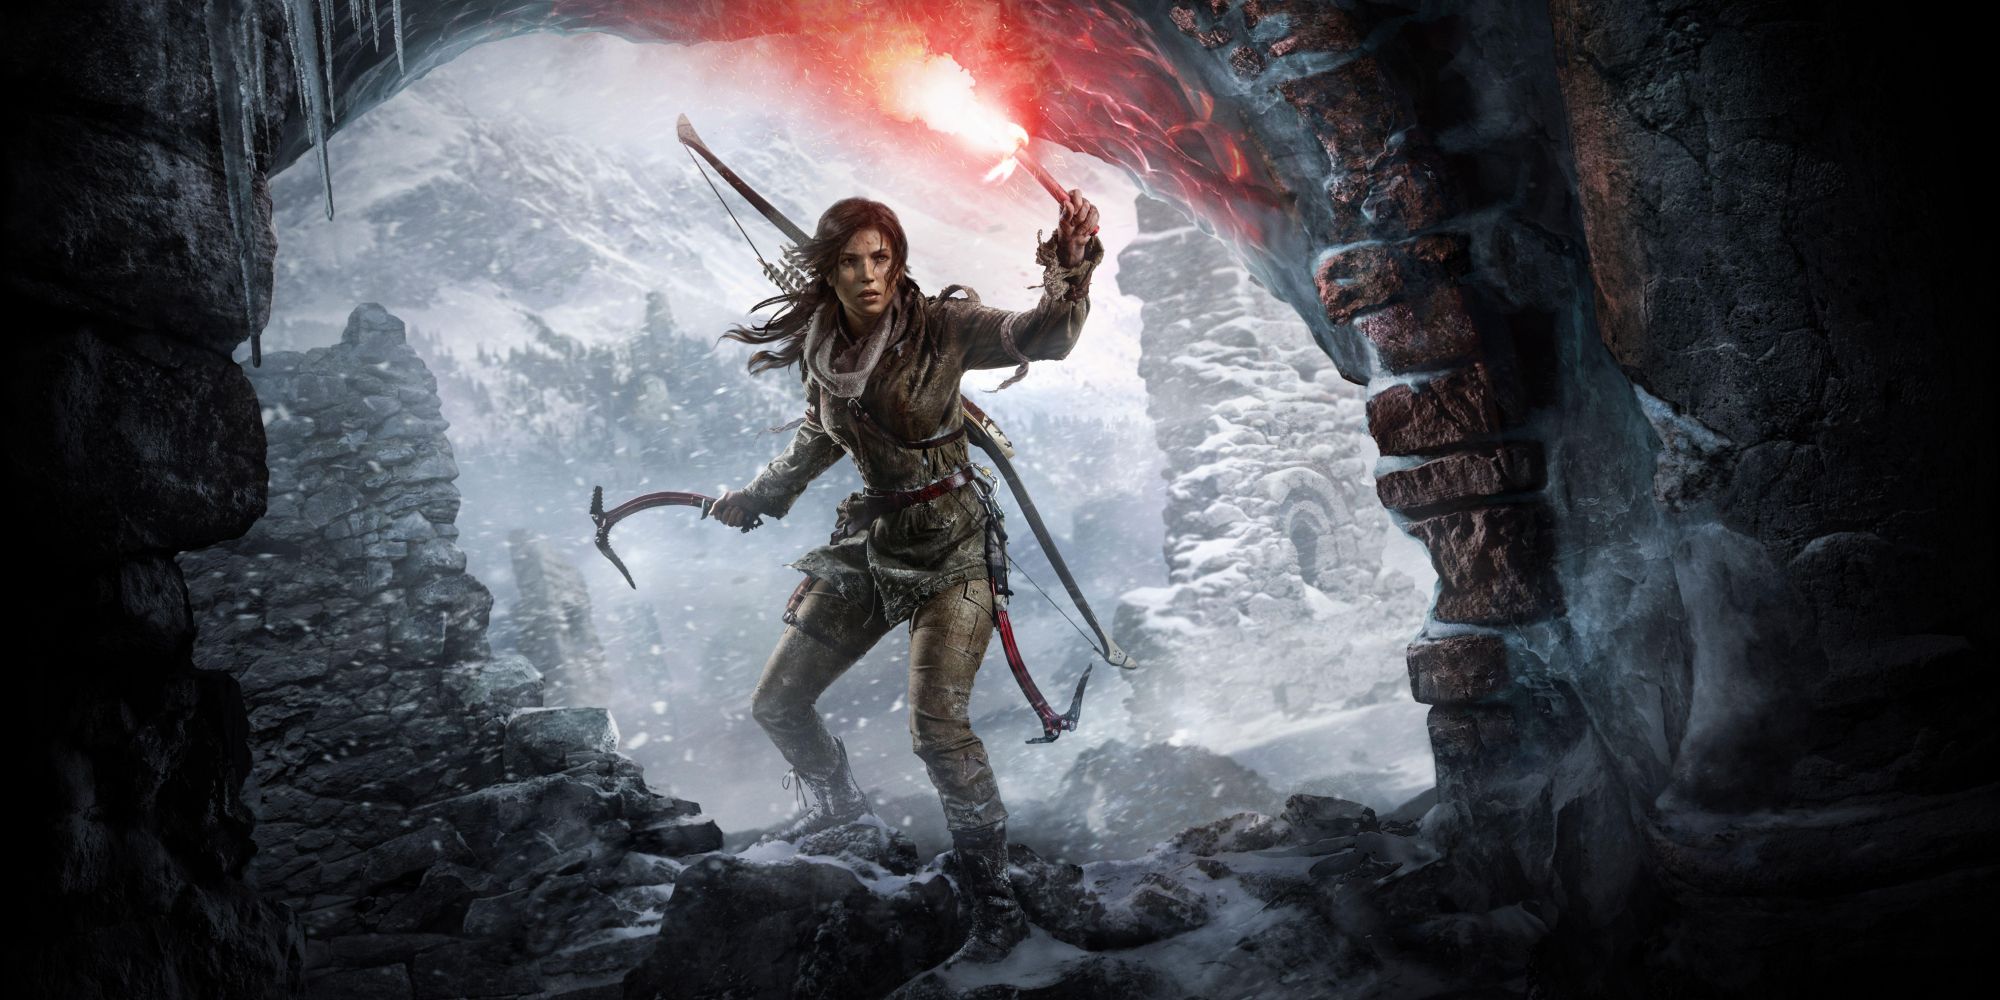 Lara Croft in a cave